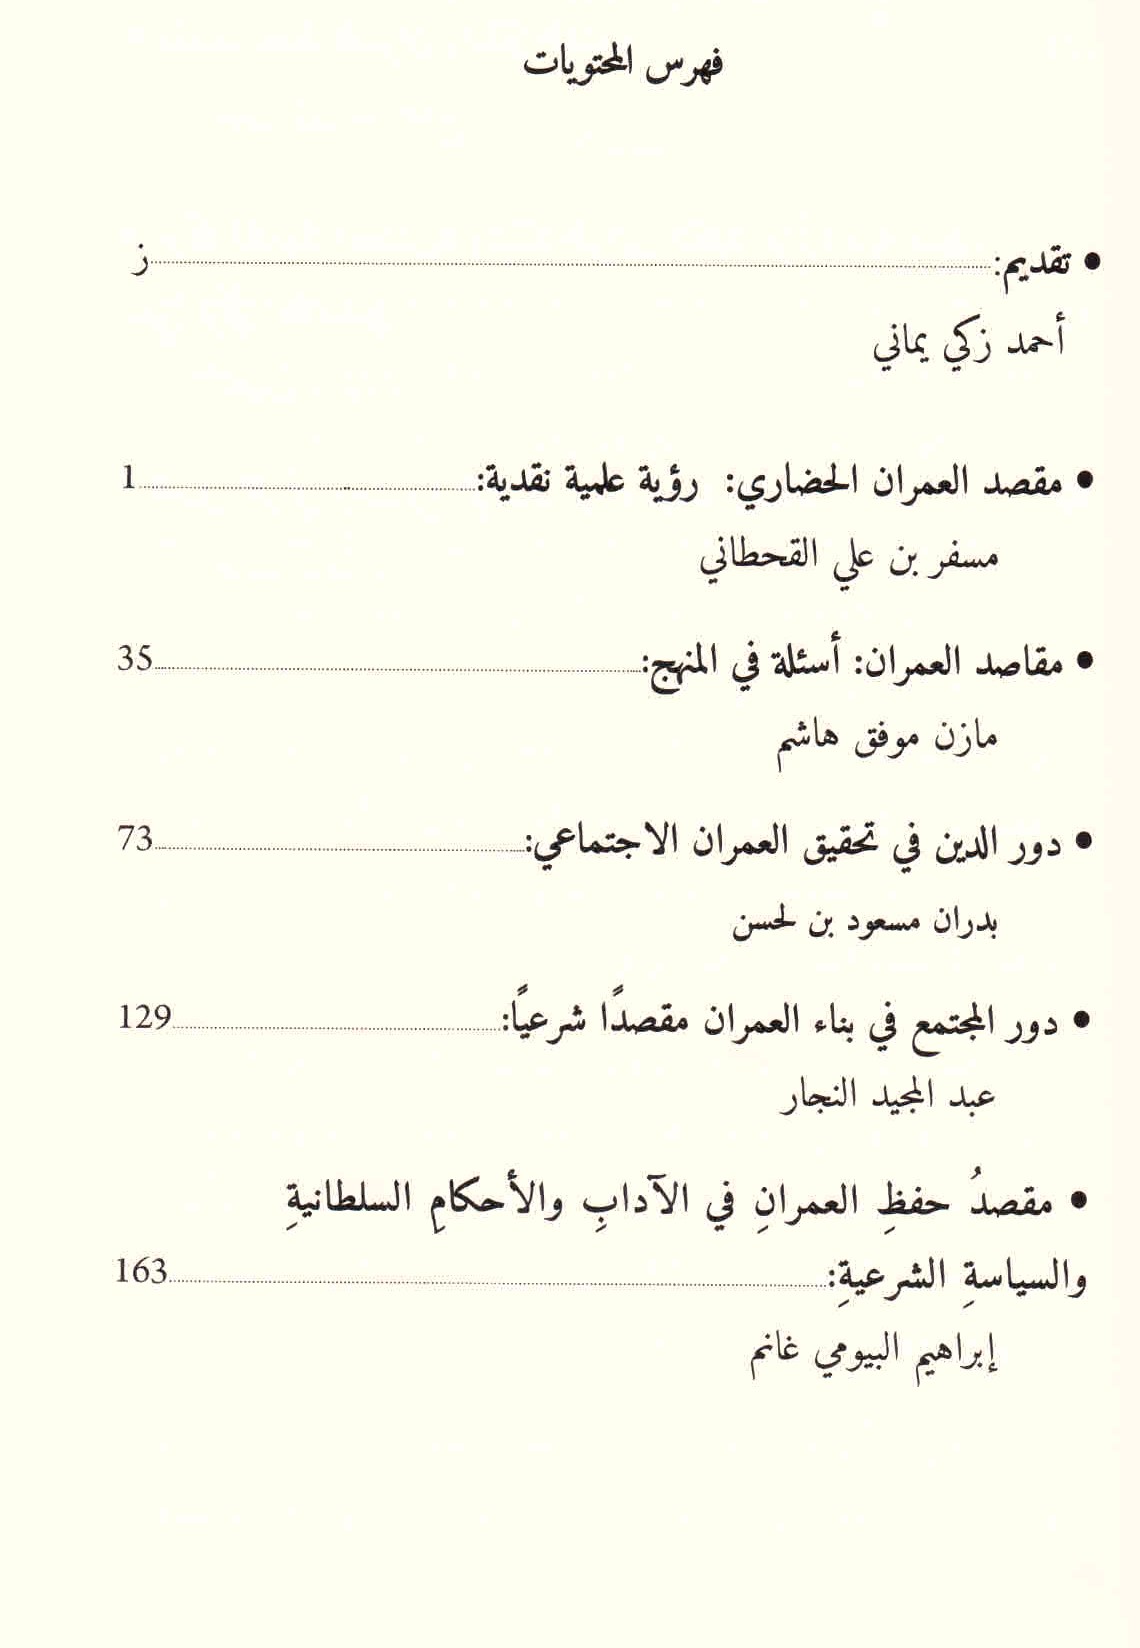 قائمة محتويات مؤتمر الدين والحضارة.